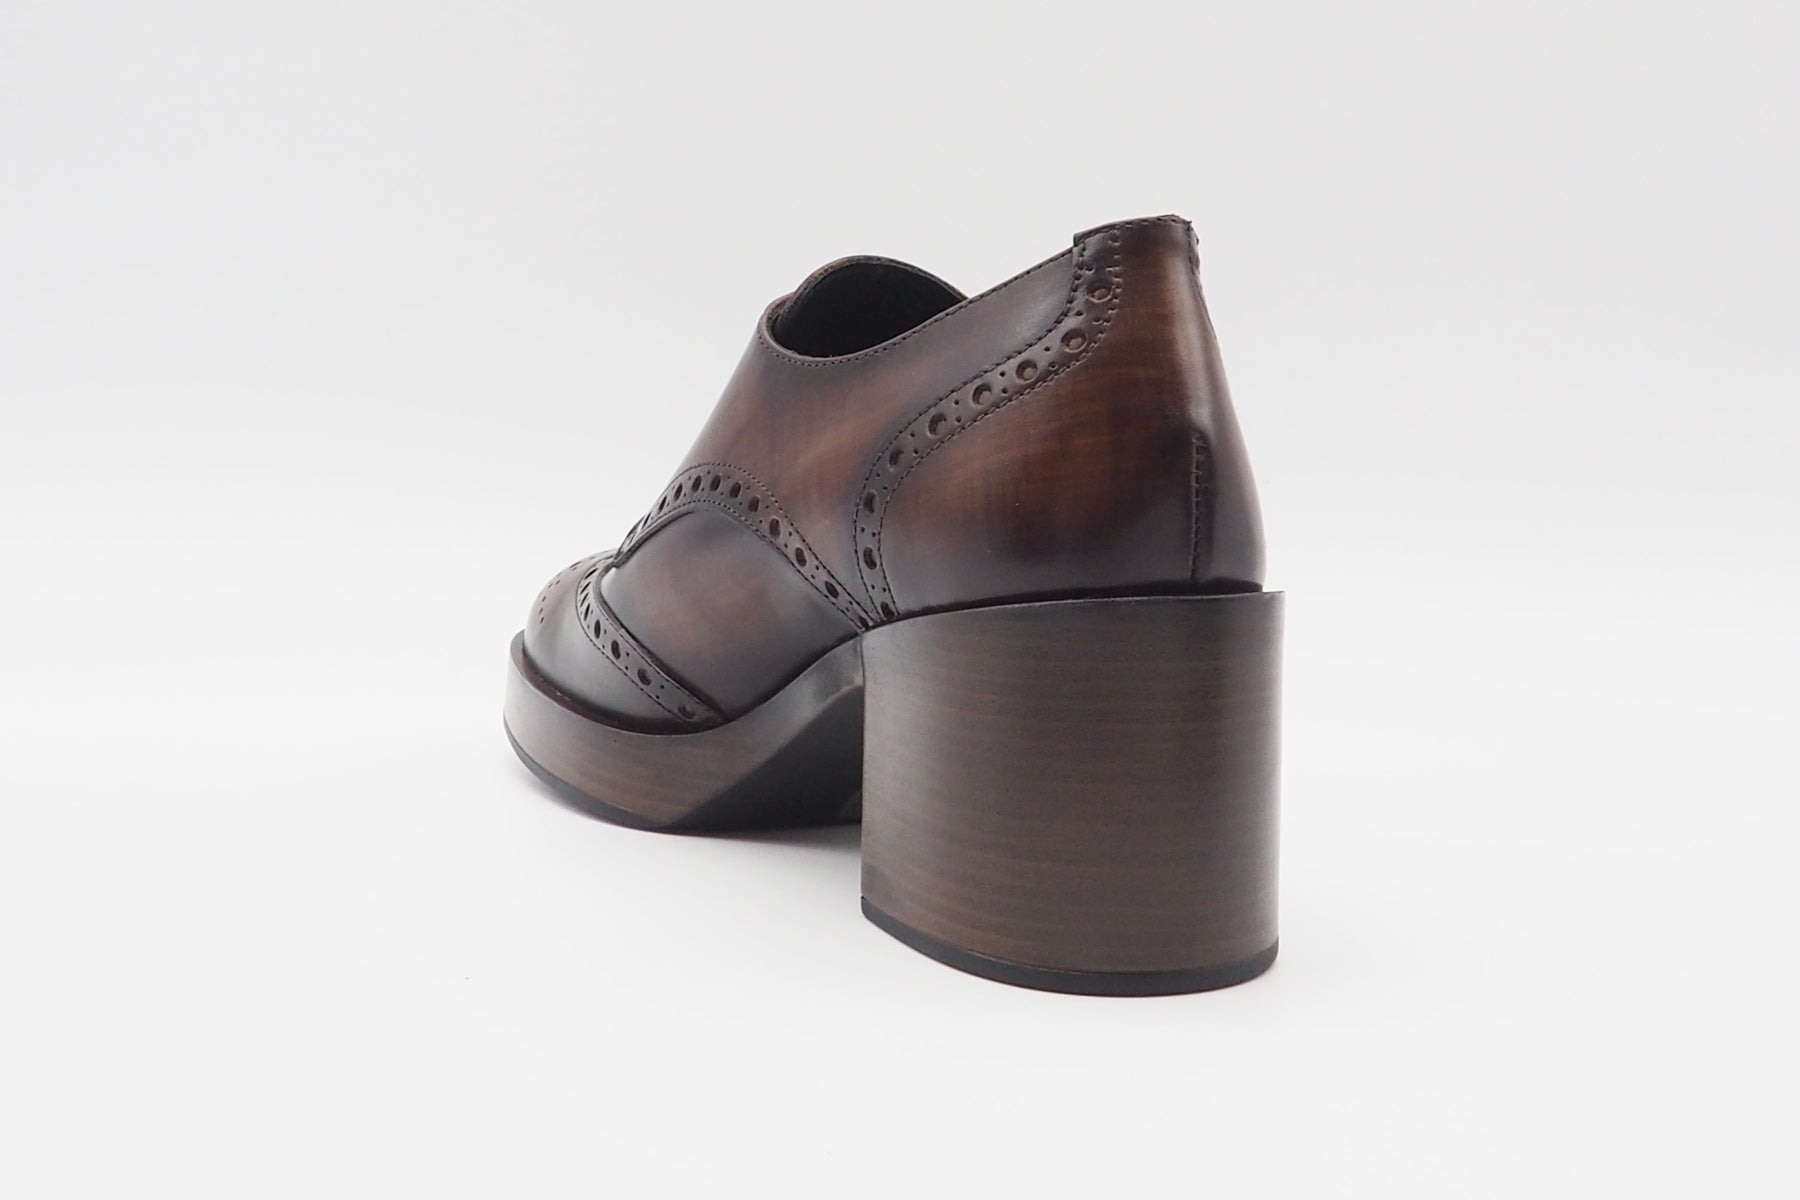 Damen Schnürschuh aus Leder in Braun - Holzoptik - Absatz 6cm Damen Loafers & Schnürer Pons Quintana 